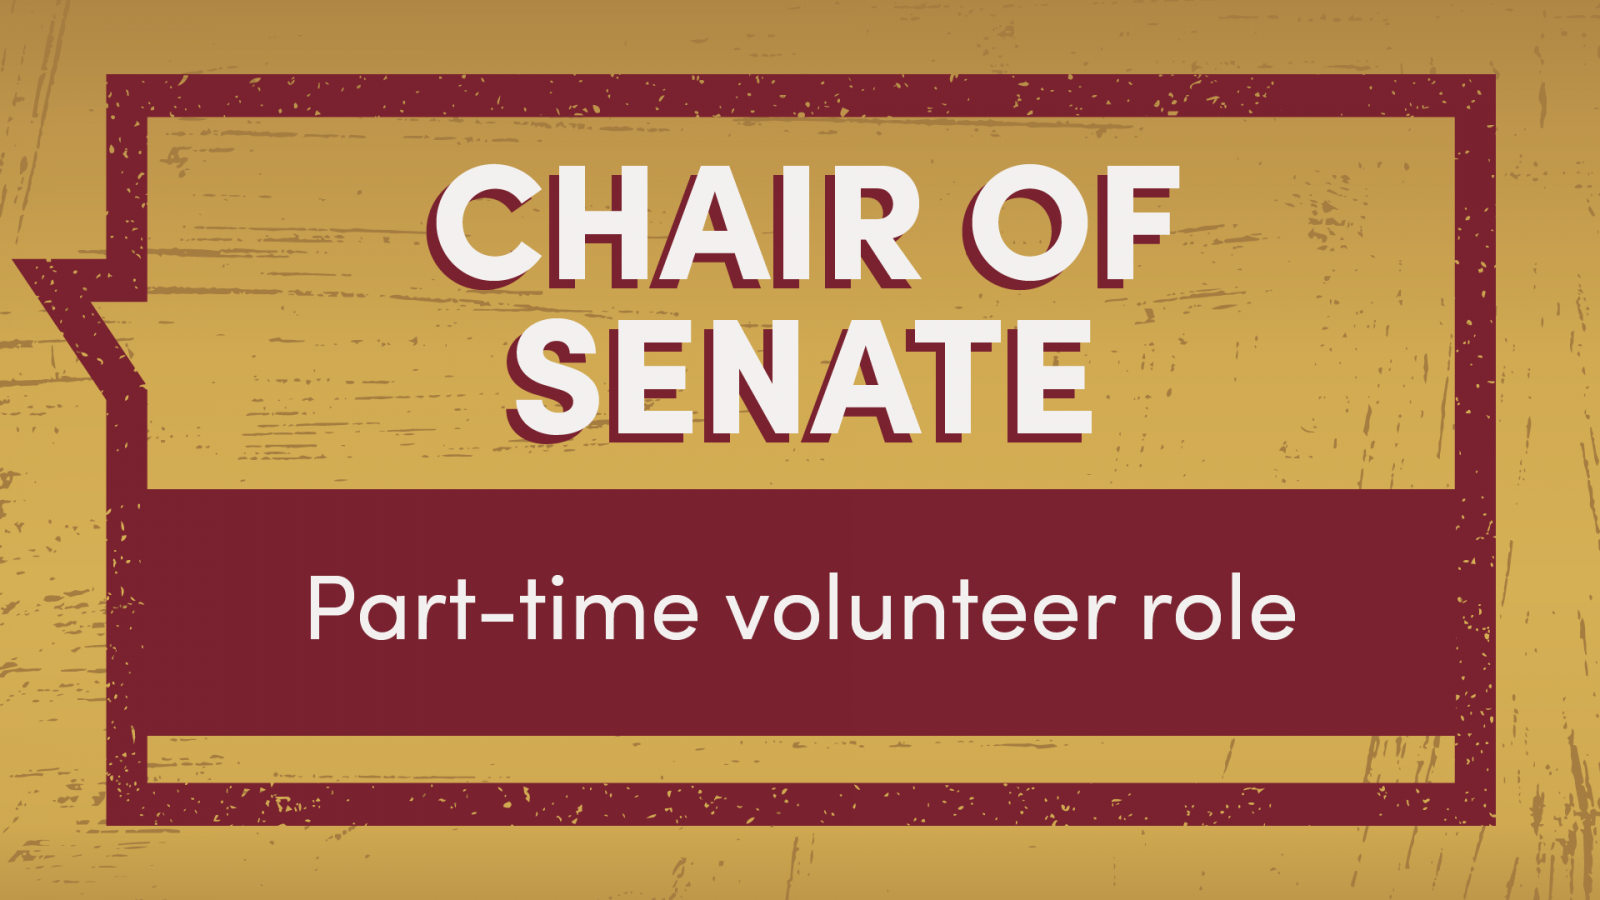 Open the Chair of Senate role profile PDF